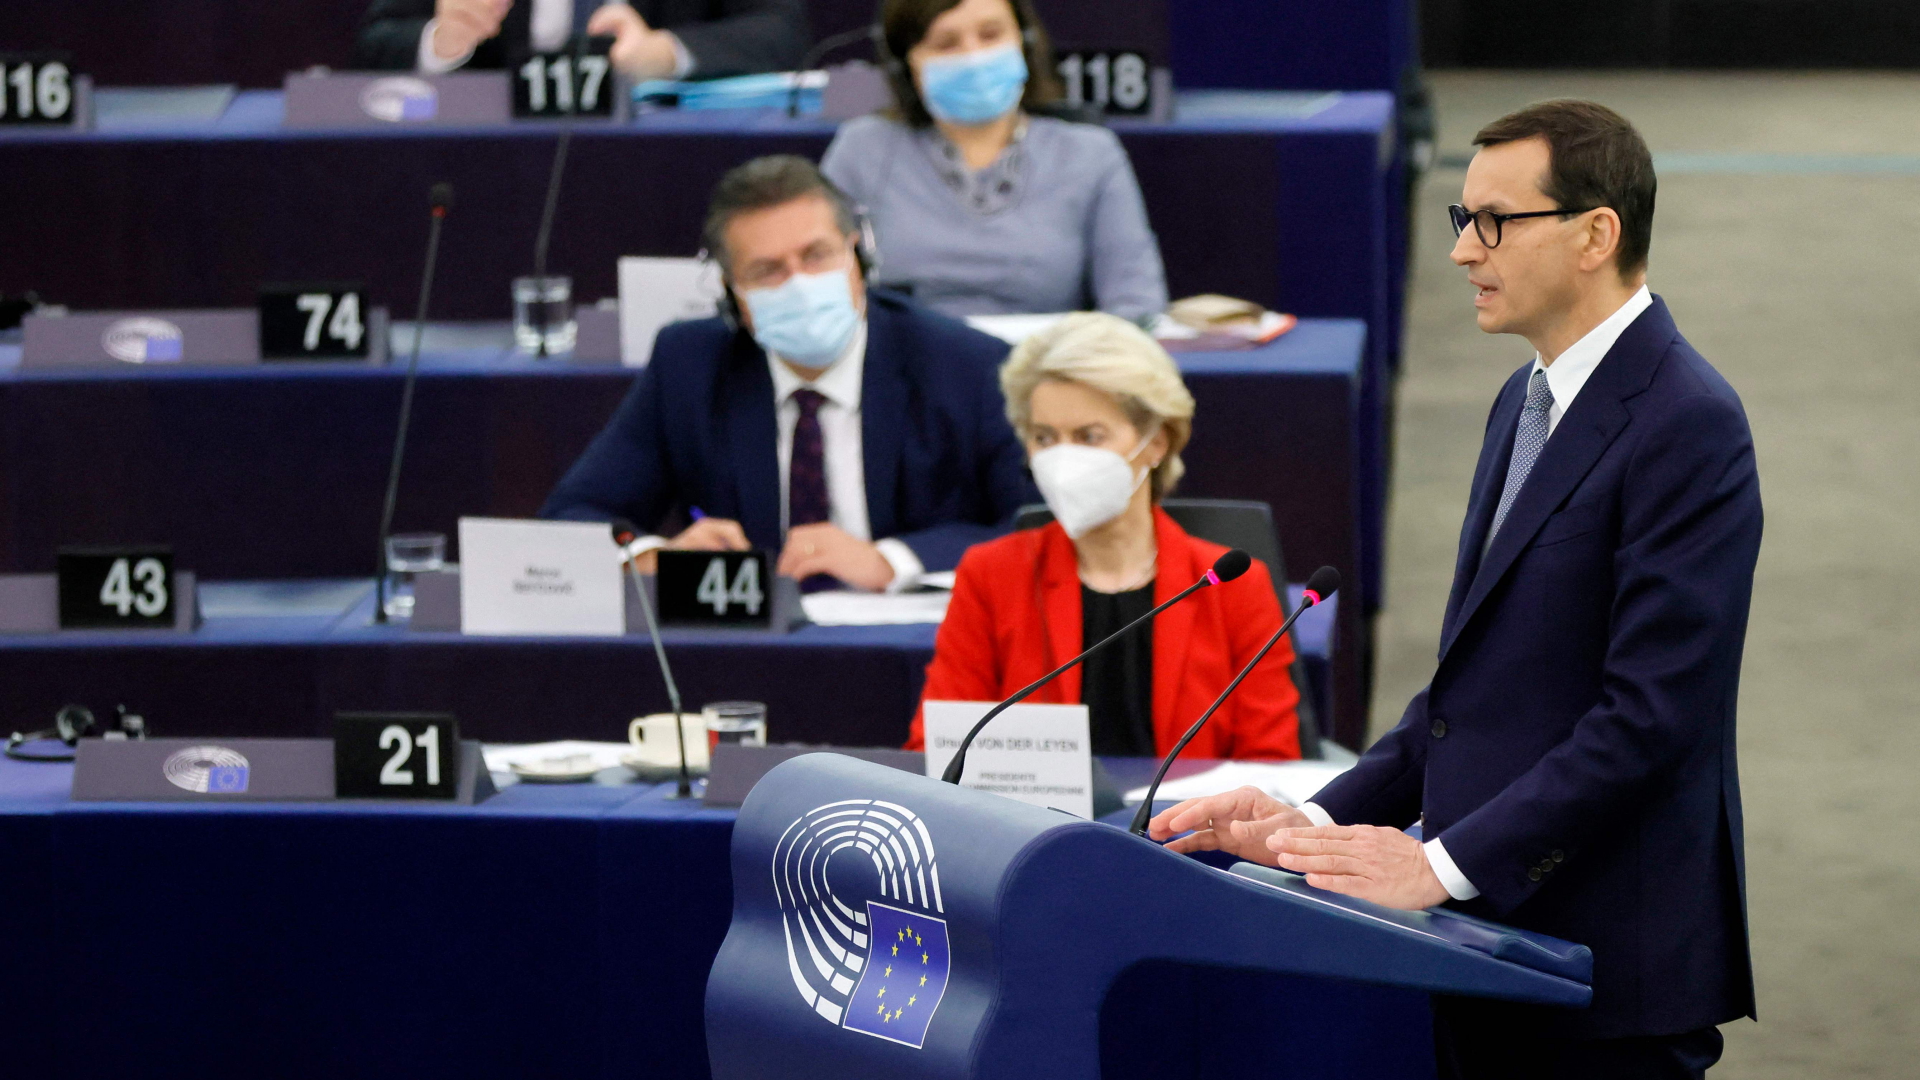 Der polnische Premierminister Mateusz Morawiecki hält eine Rede während einer Sitzung des Europäischen Parlaments